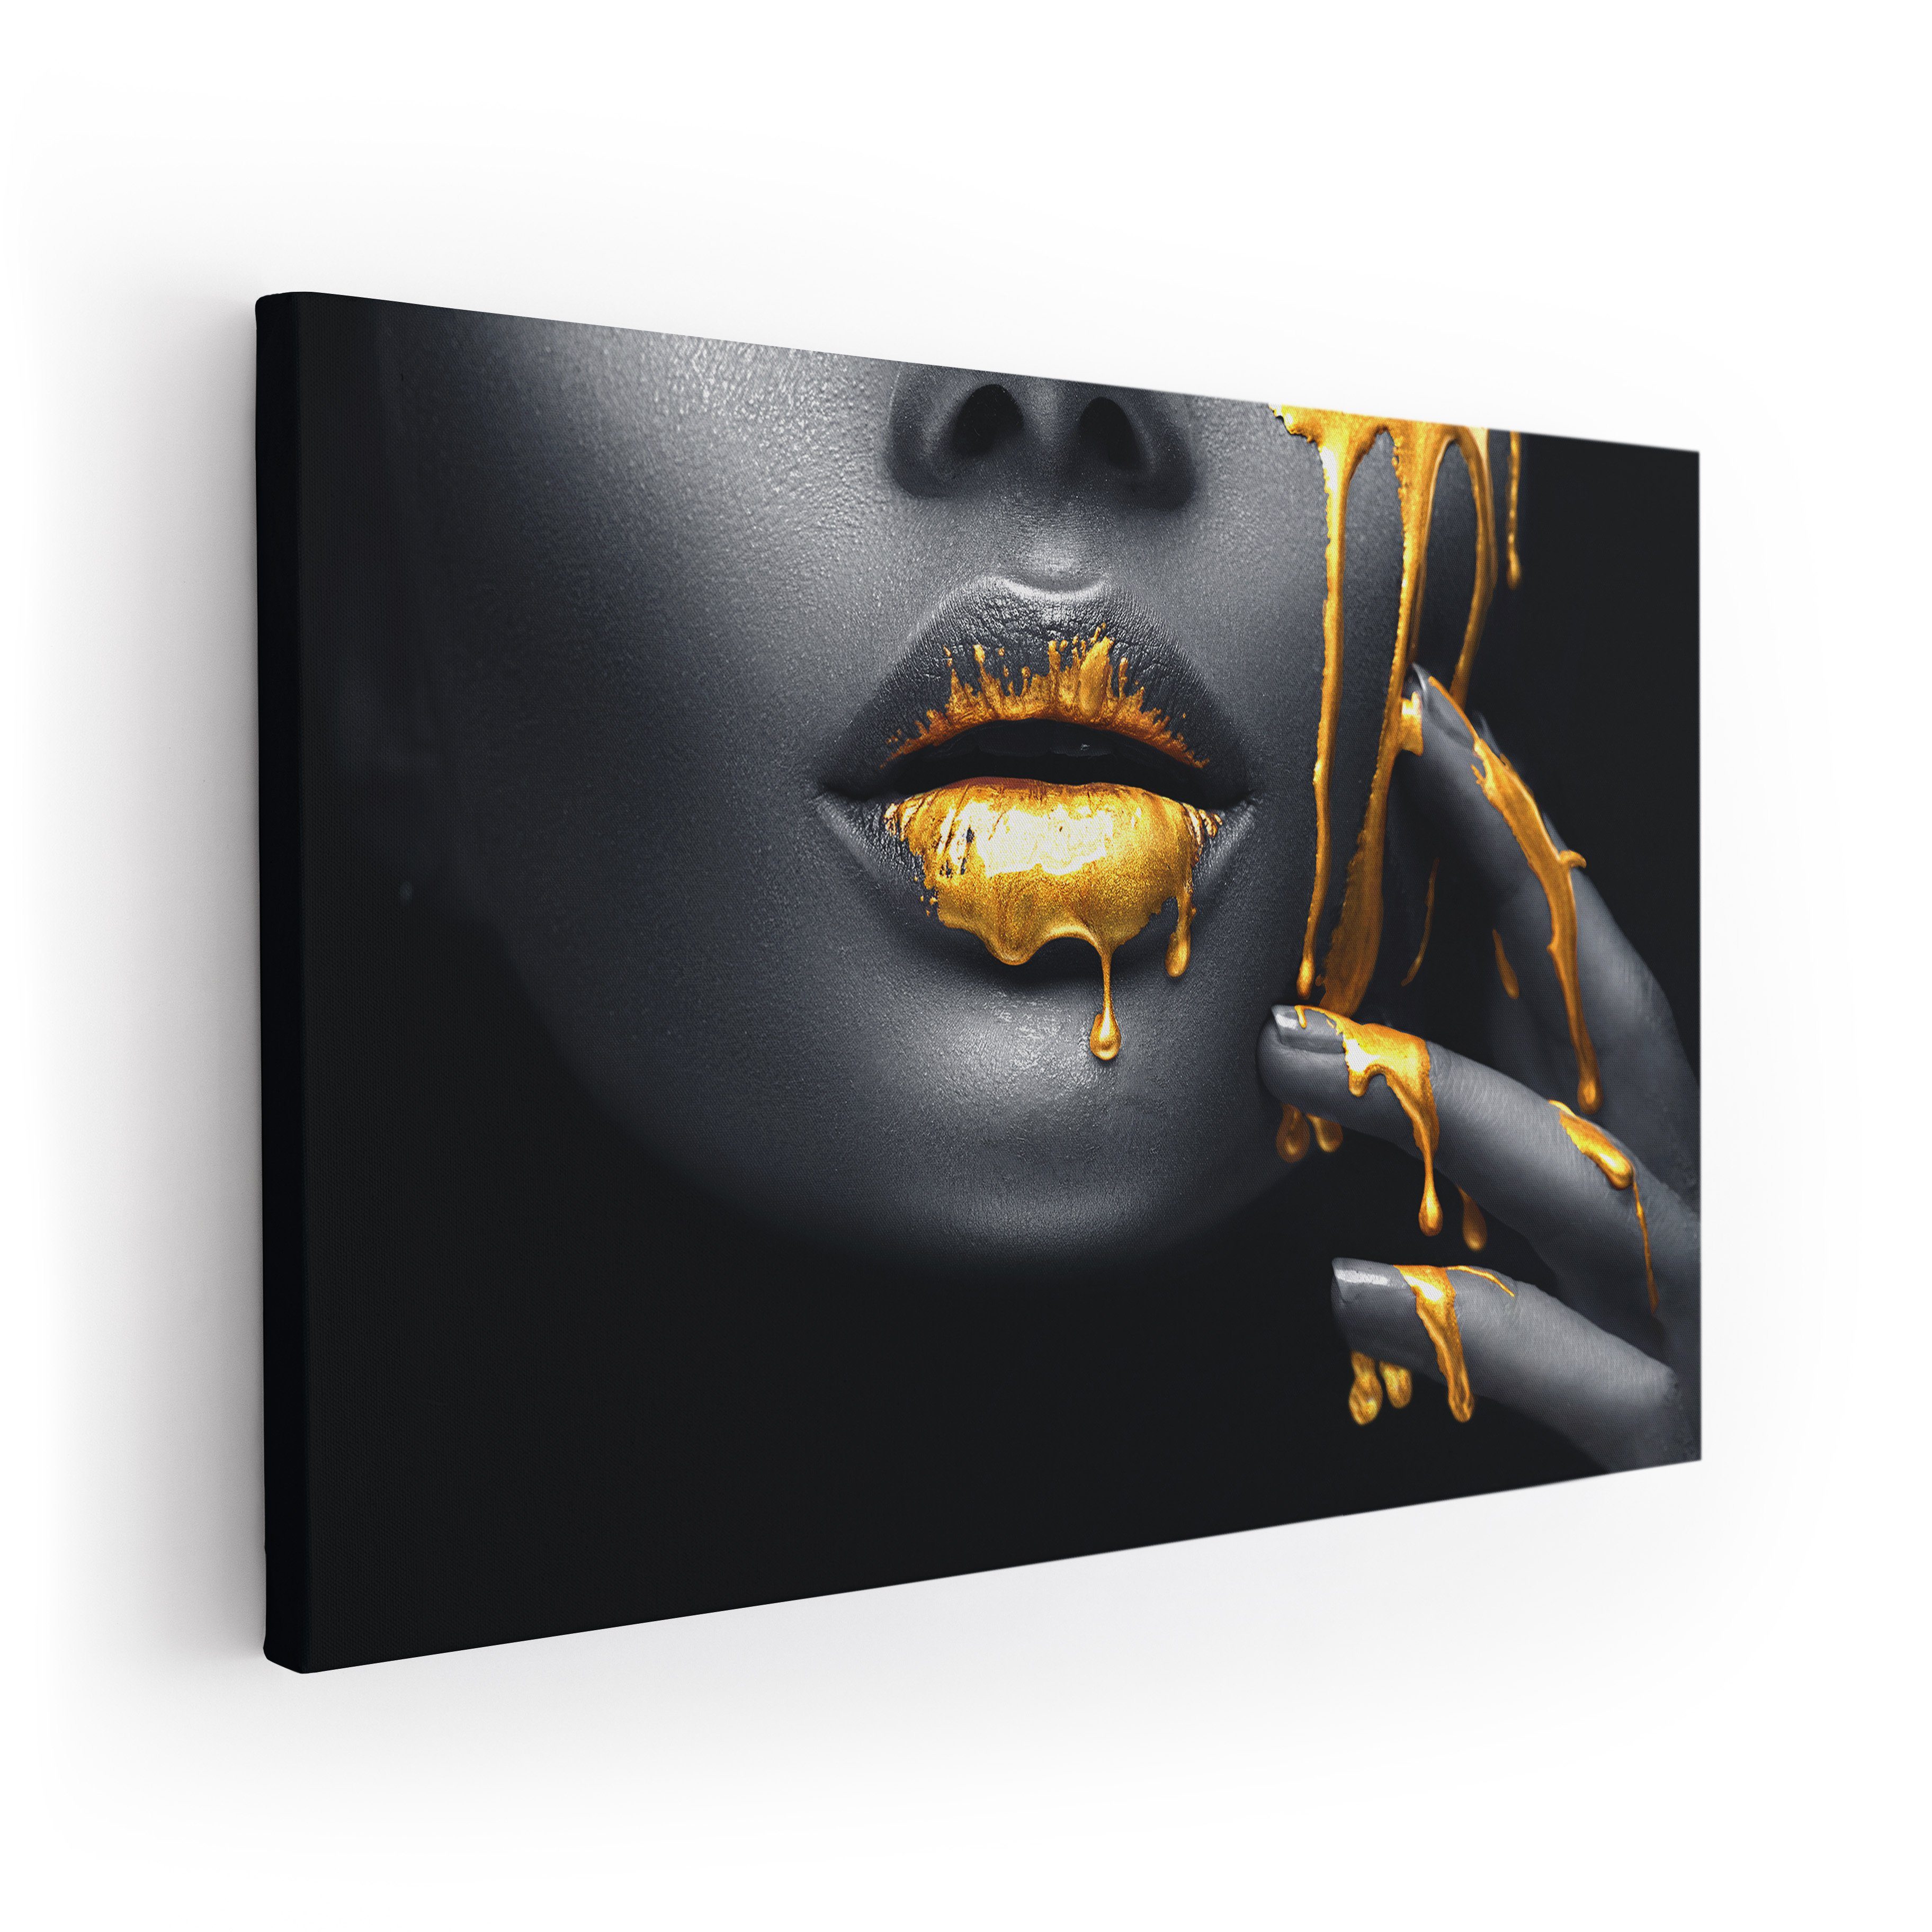 ArtMind Wandbild Golden face, Premium Wandbilder als Poster & gerahmte Leinwand in 4 Größen, Wall Art, Bild, Canva